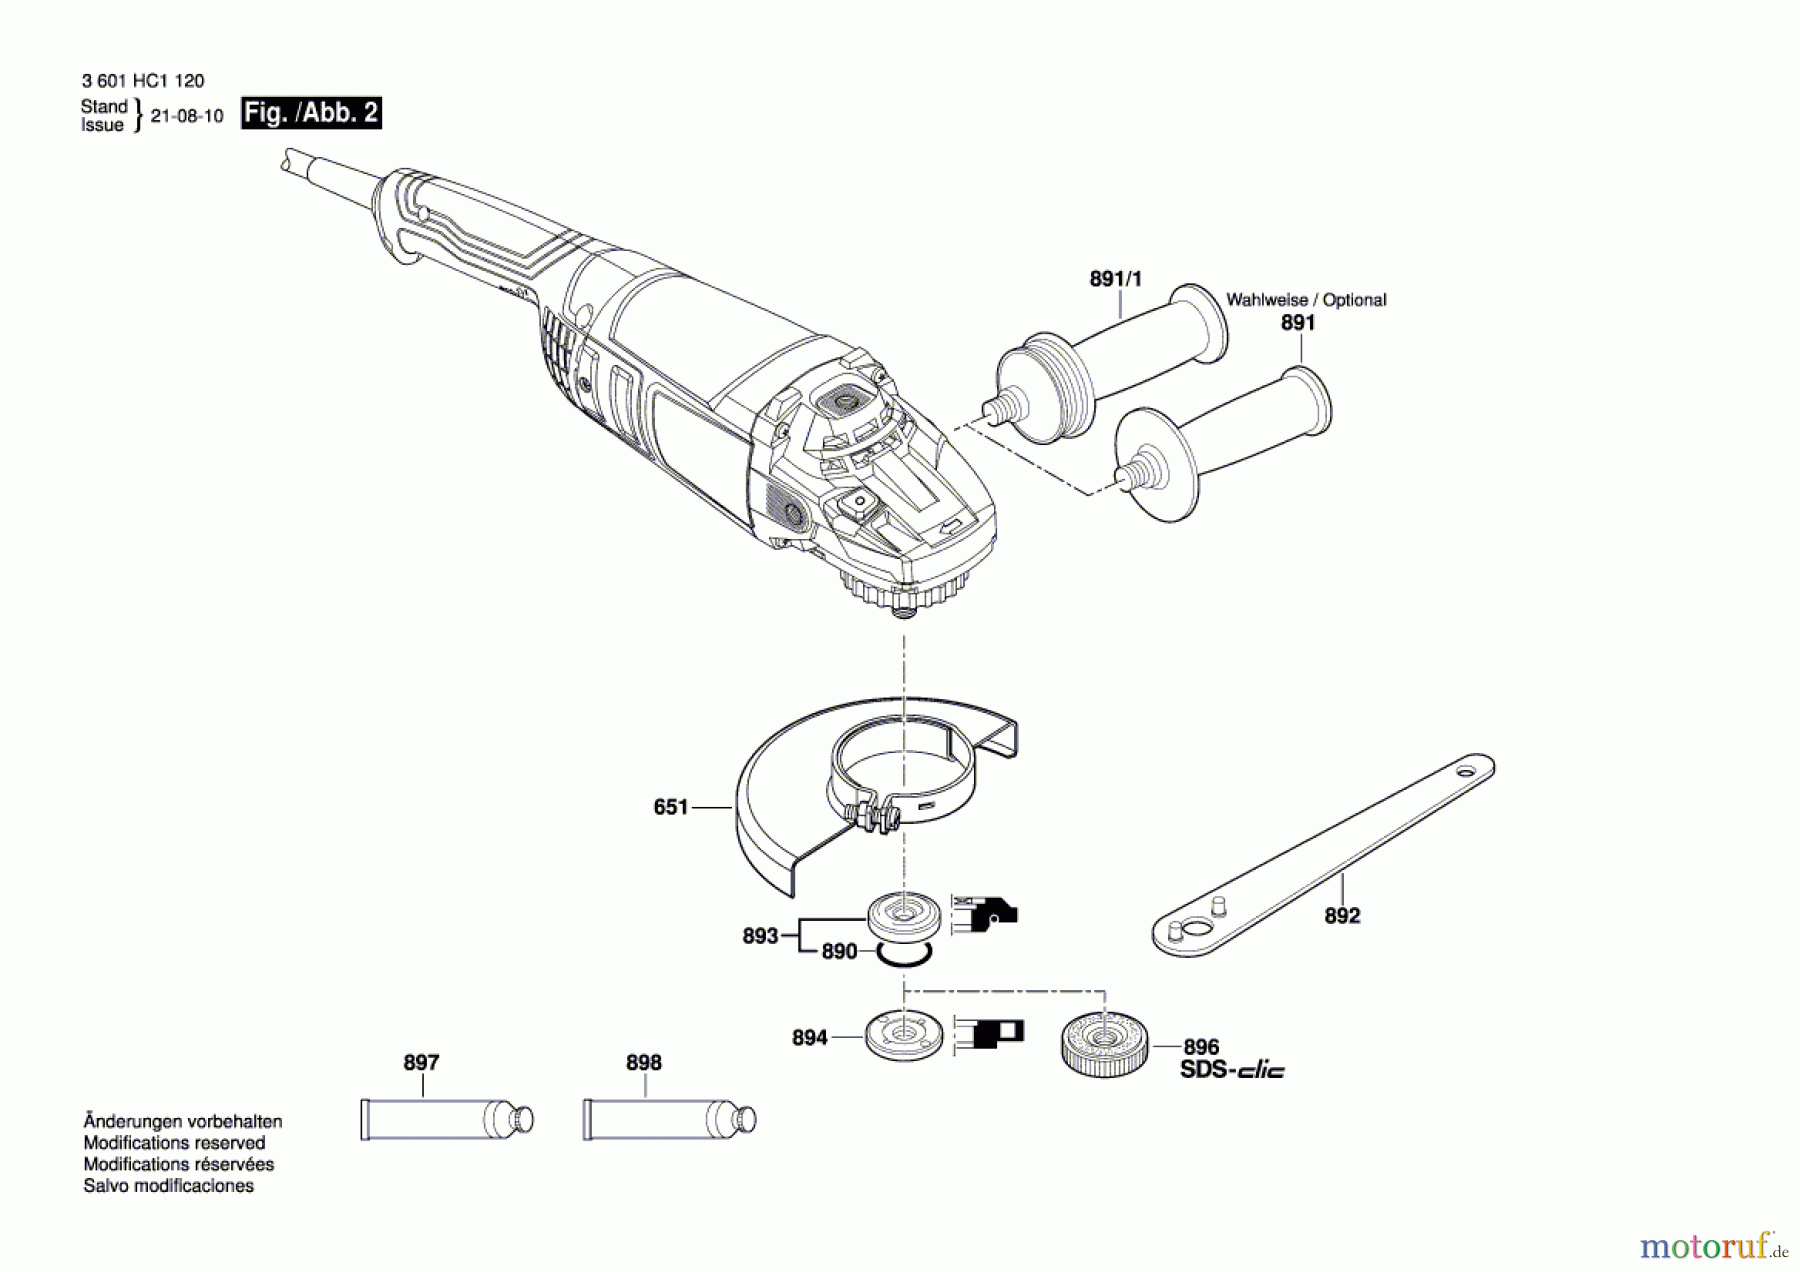  Bosch Werkzeug Winkelschleifer GWS 20-230 P Seite 2